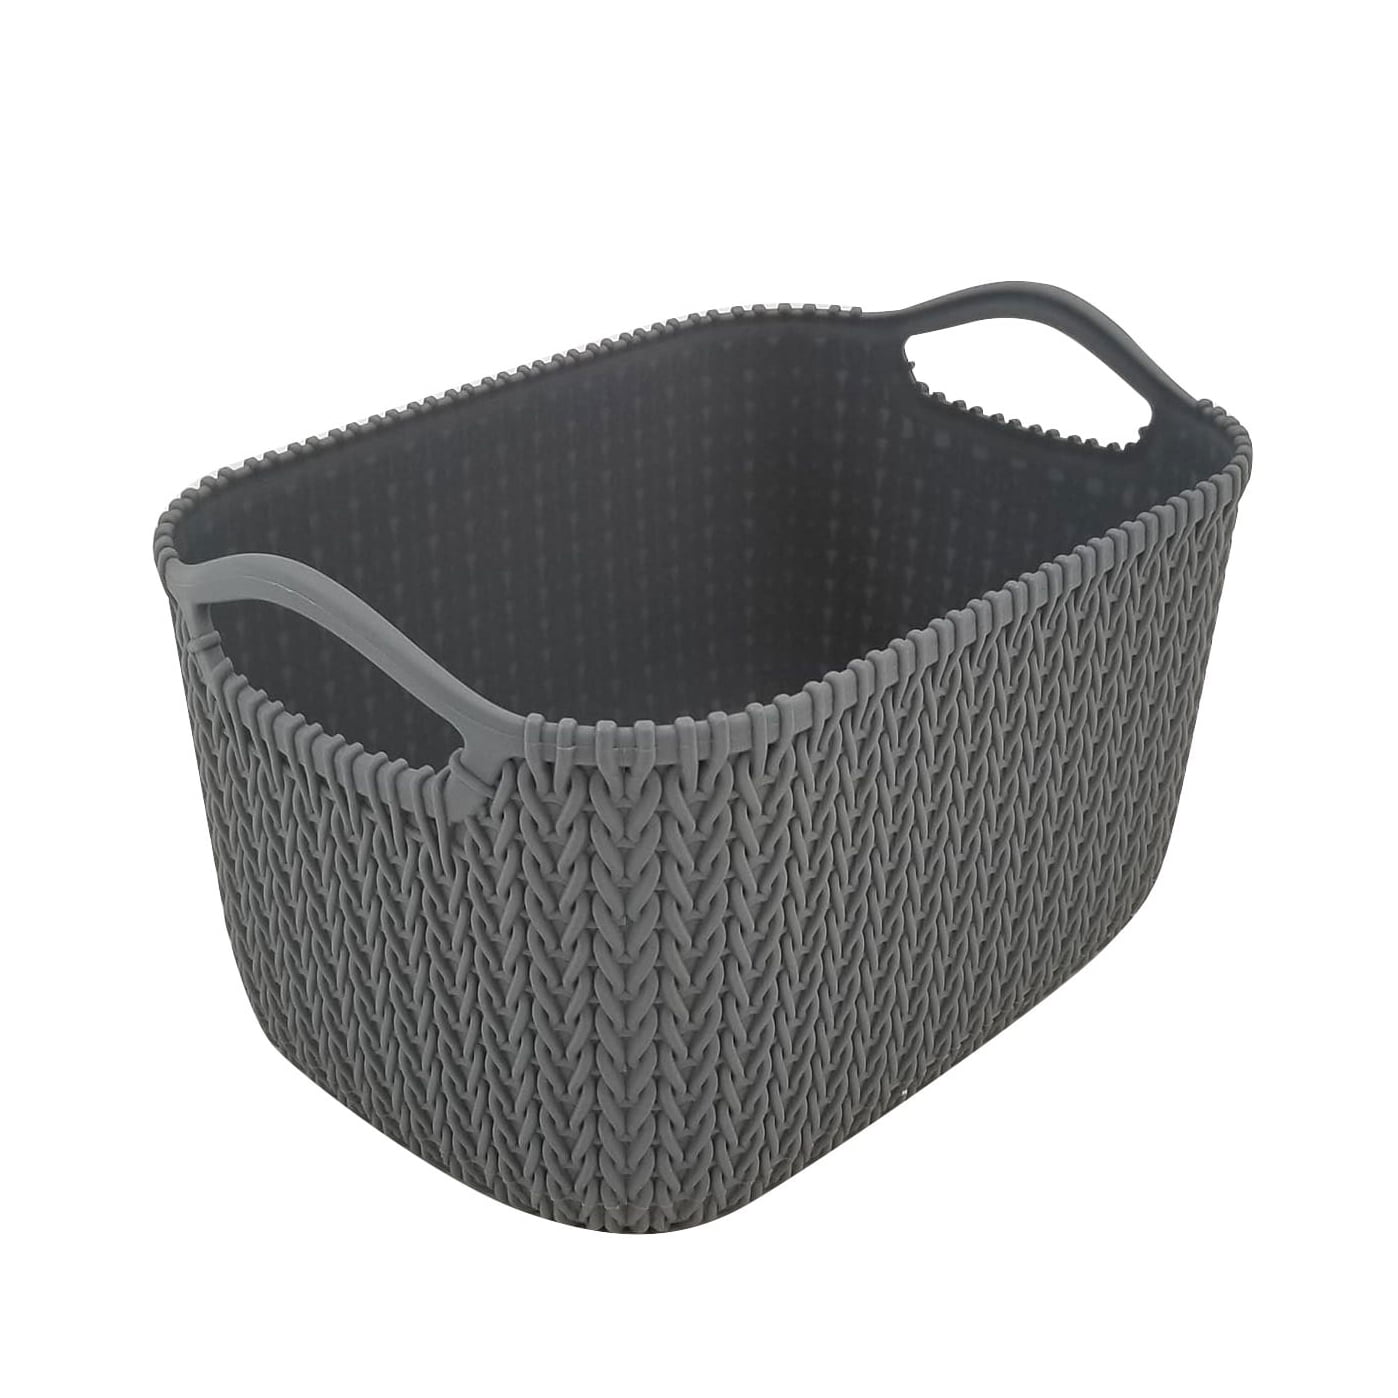 Small Gray Faux Rattan Storage Basket